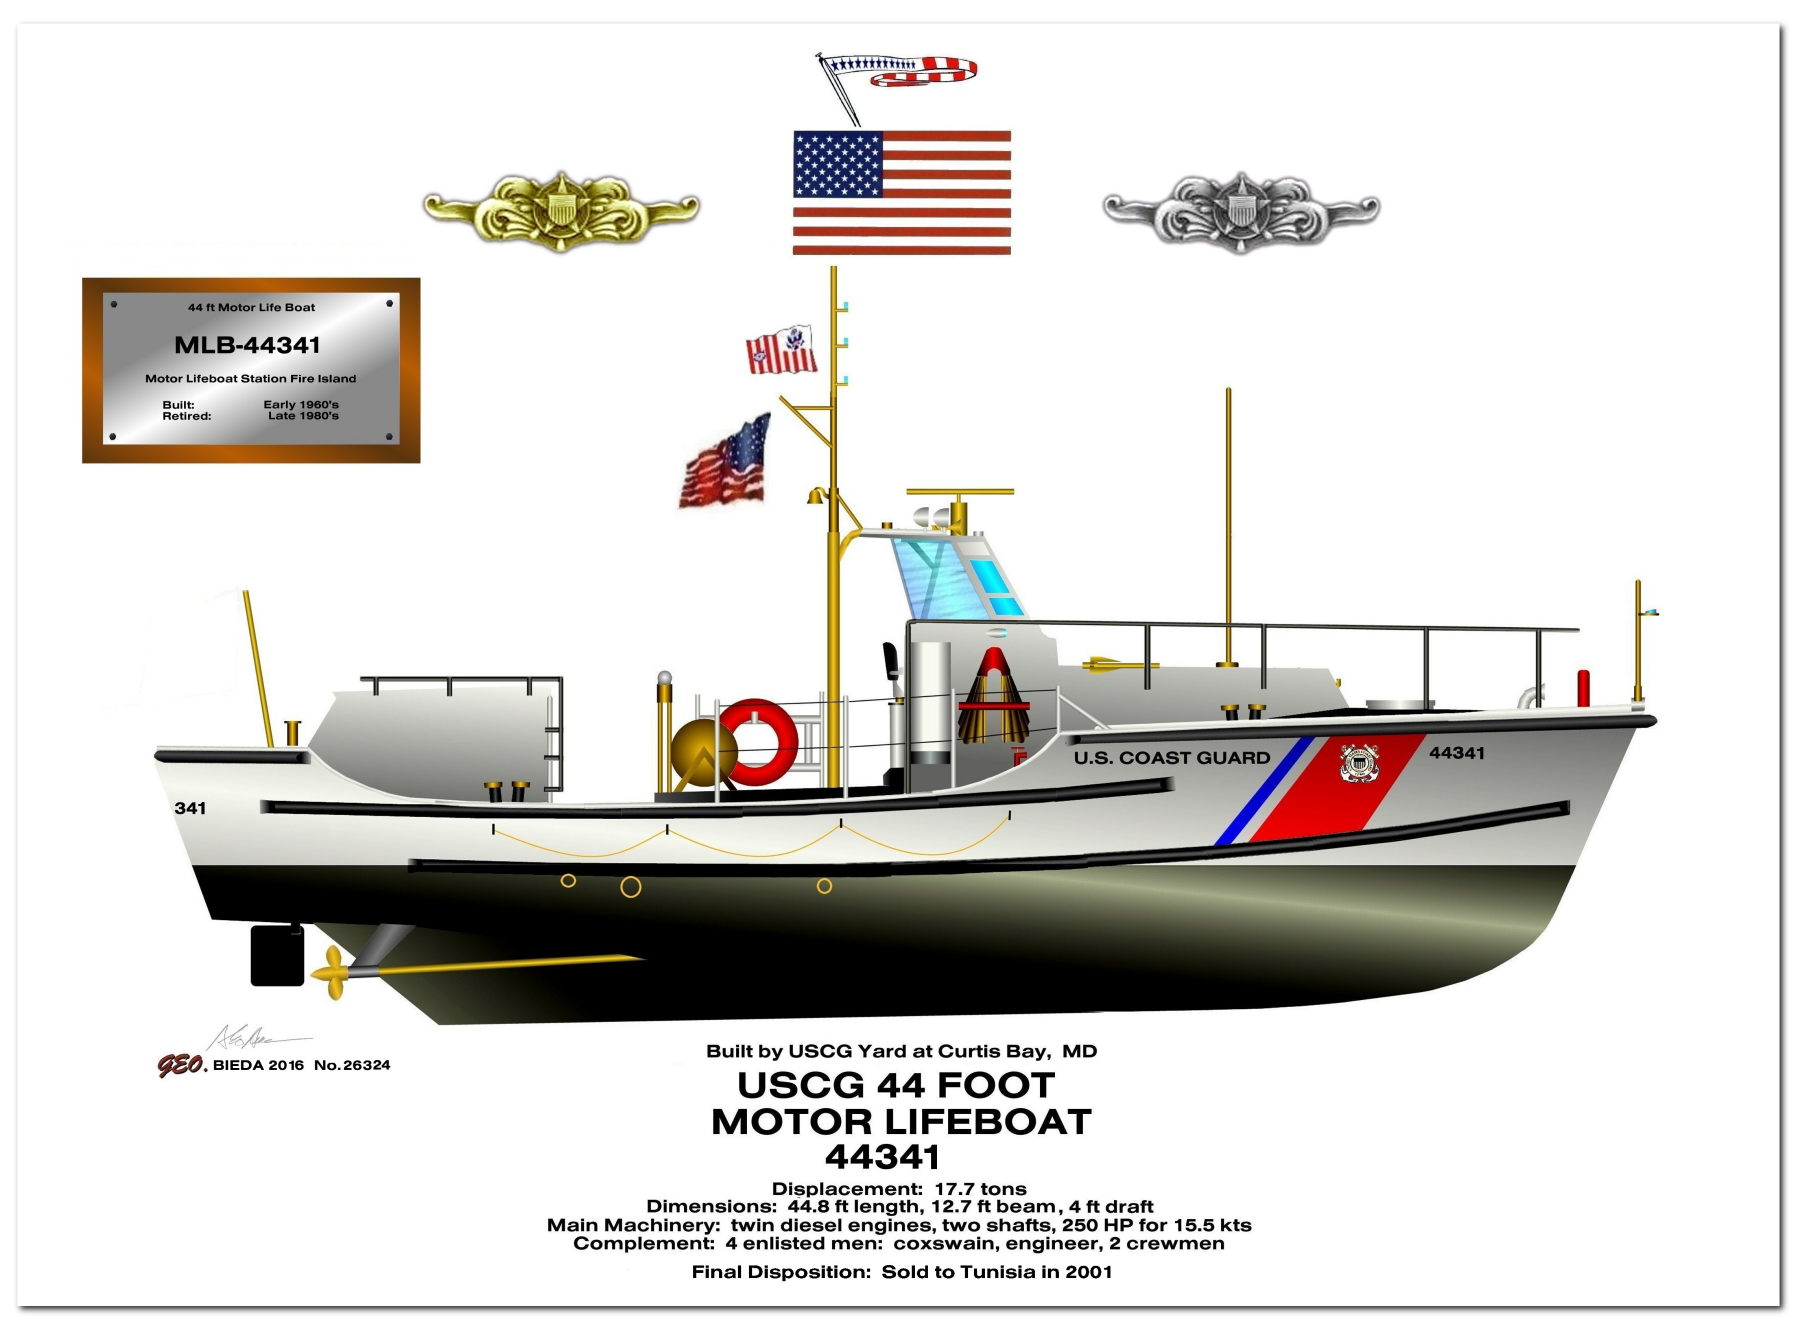 USCG 44 Ft. Motor Life Boat Profile Drawings by George Bieda